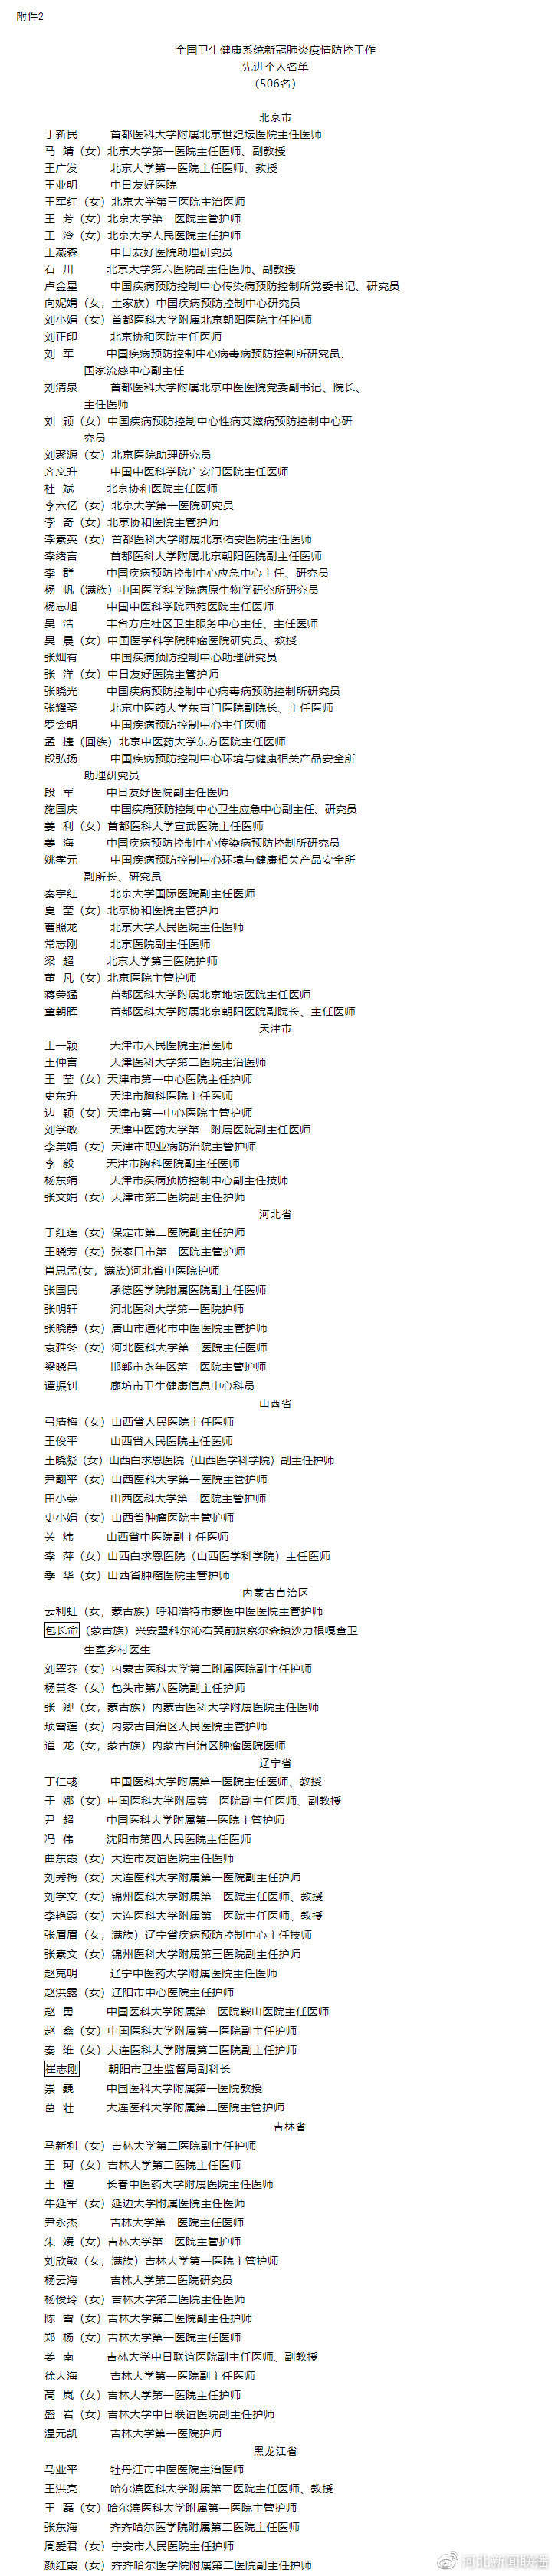 湖南17名医护人员被授全国防疫先进个人称号 张辉、宋英杰被追授(图3)